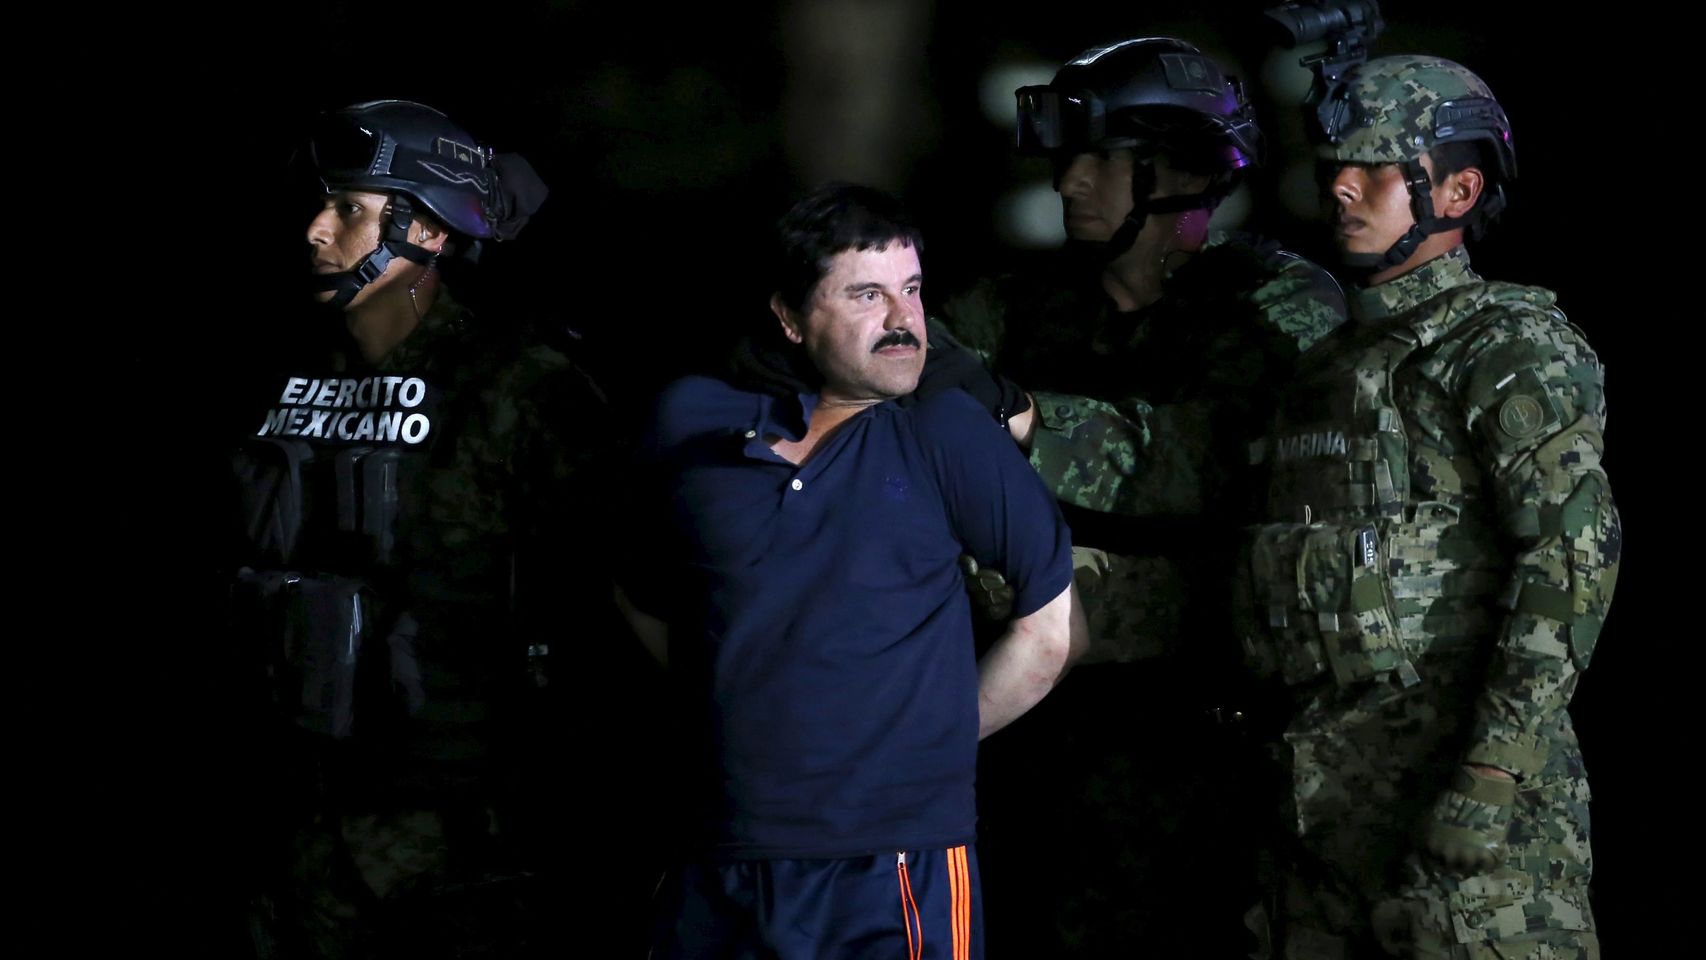  ‘El Chapo’ no será extraditado a EU este año, señala abogado